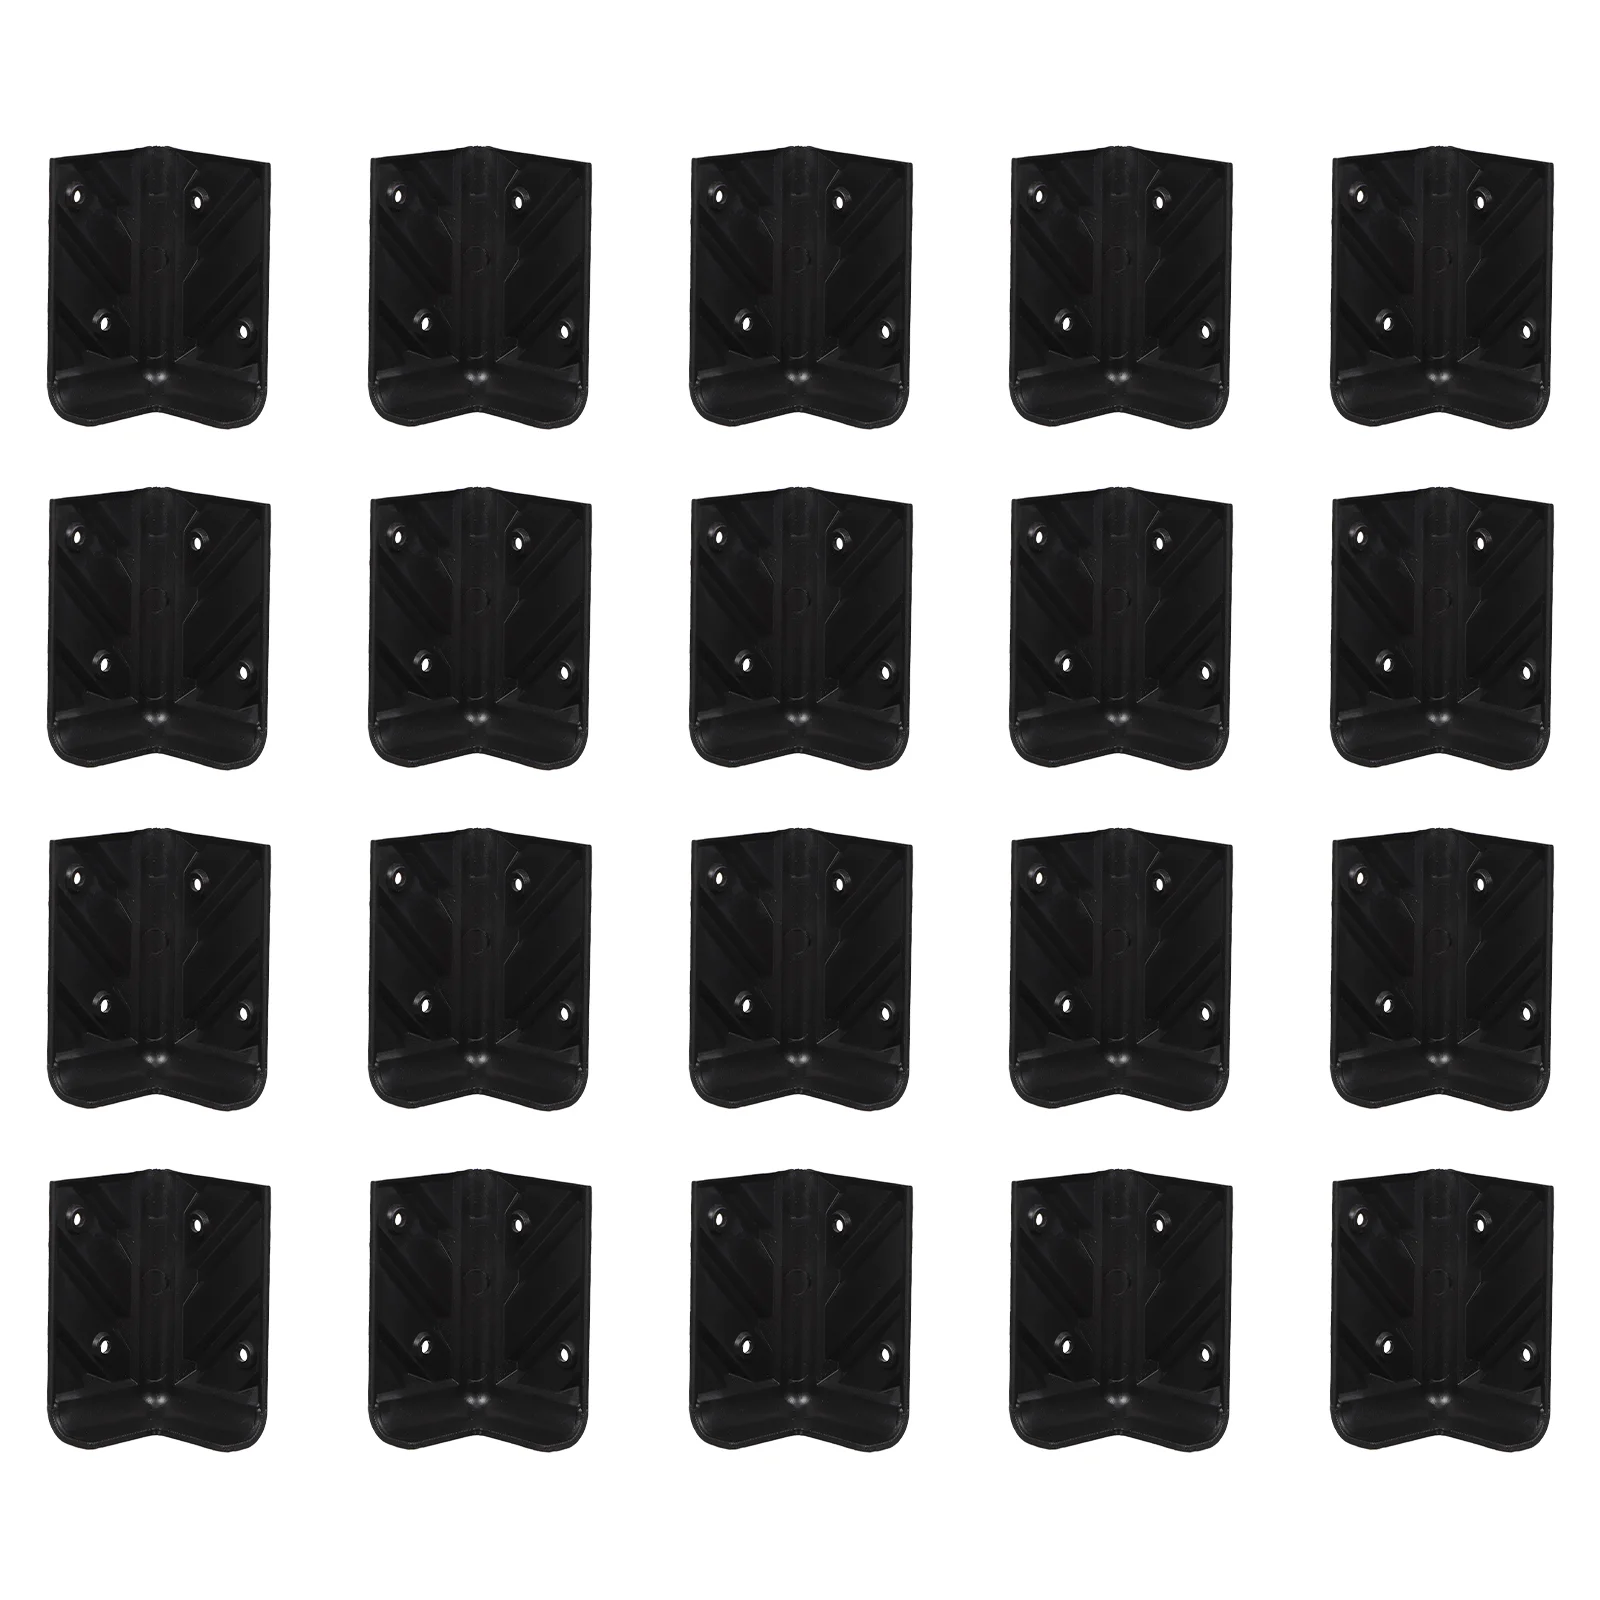 

10 комплектов защитных угловых ограждений для мебели защита от столкновений пластиковый шкаф 4,5x7,7 см черные винты из АБС-пластика